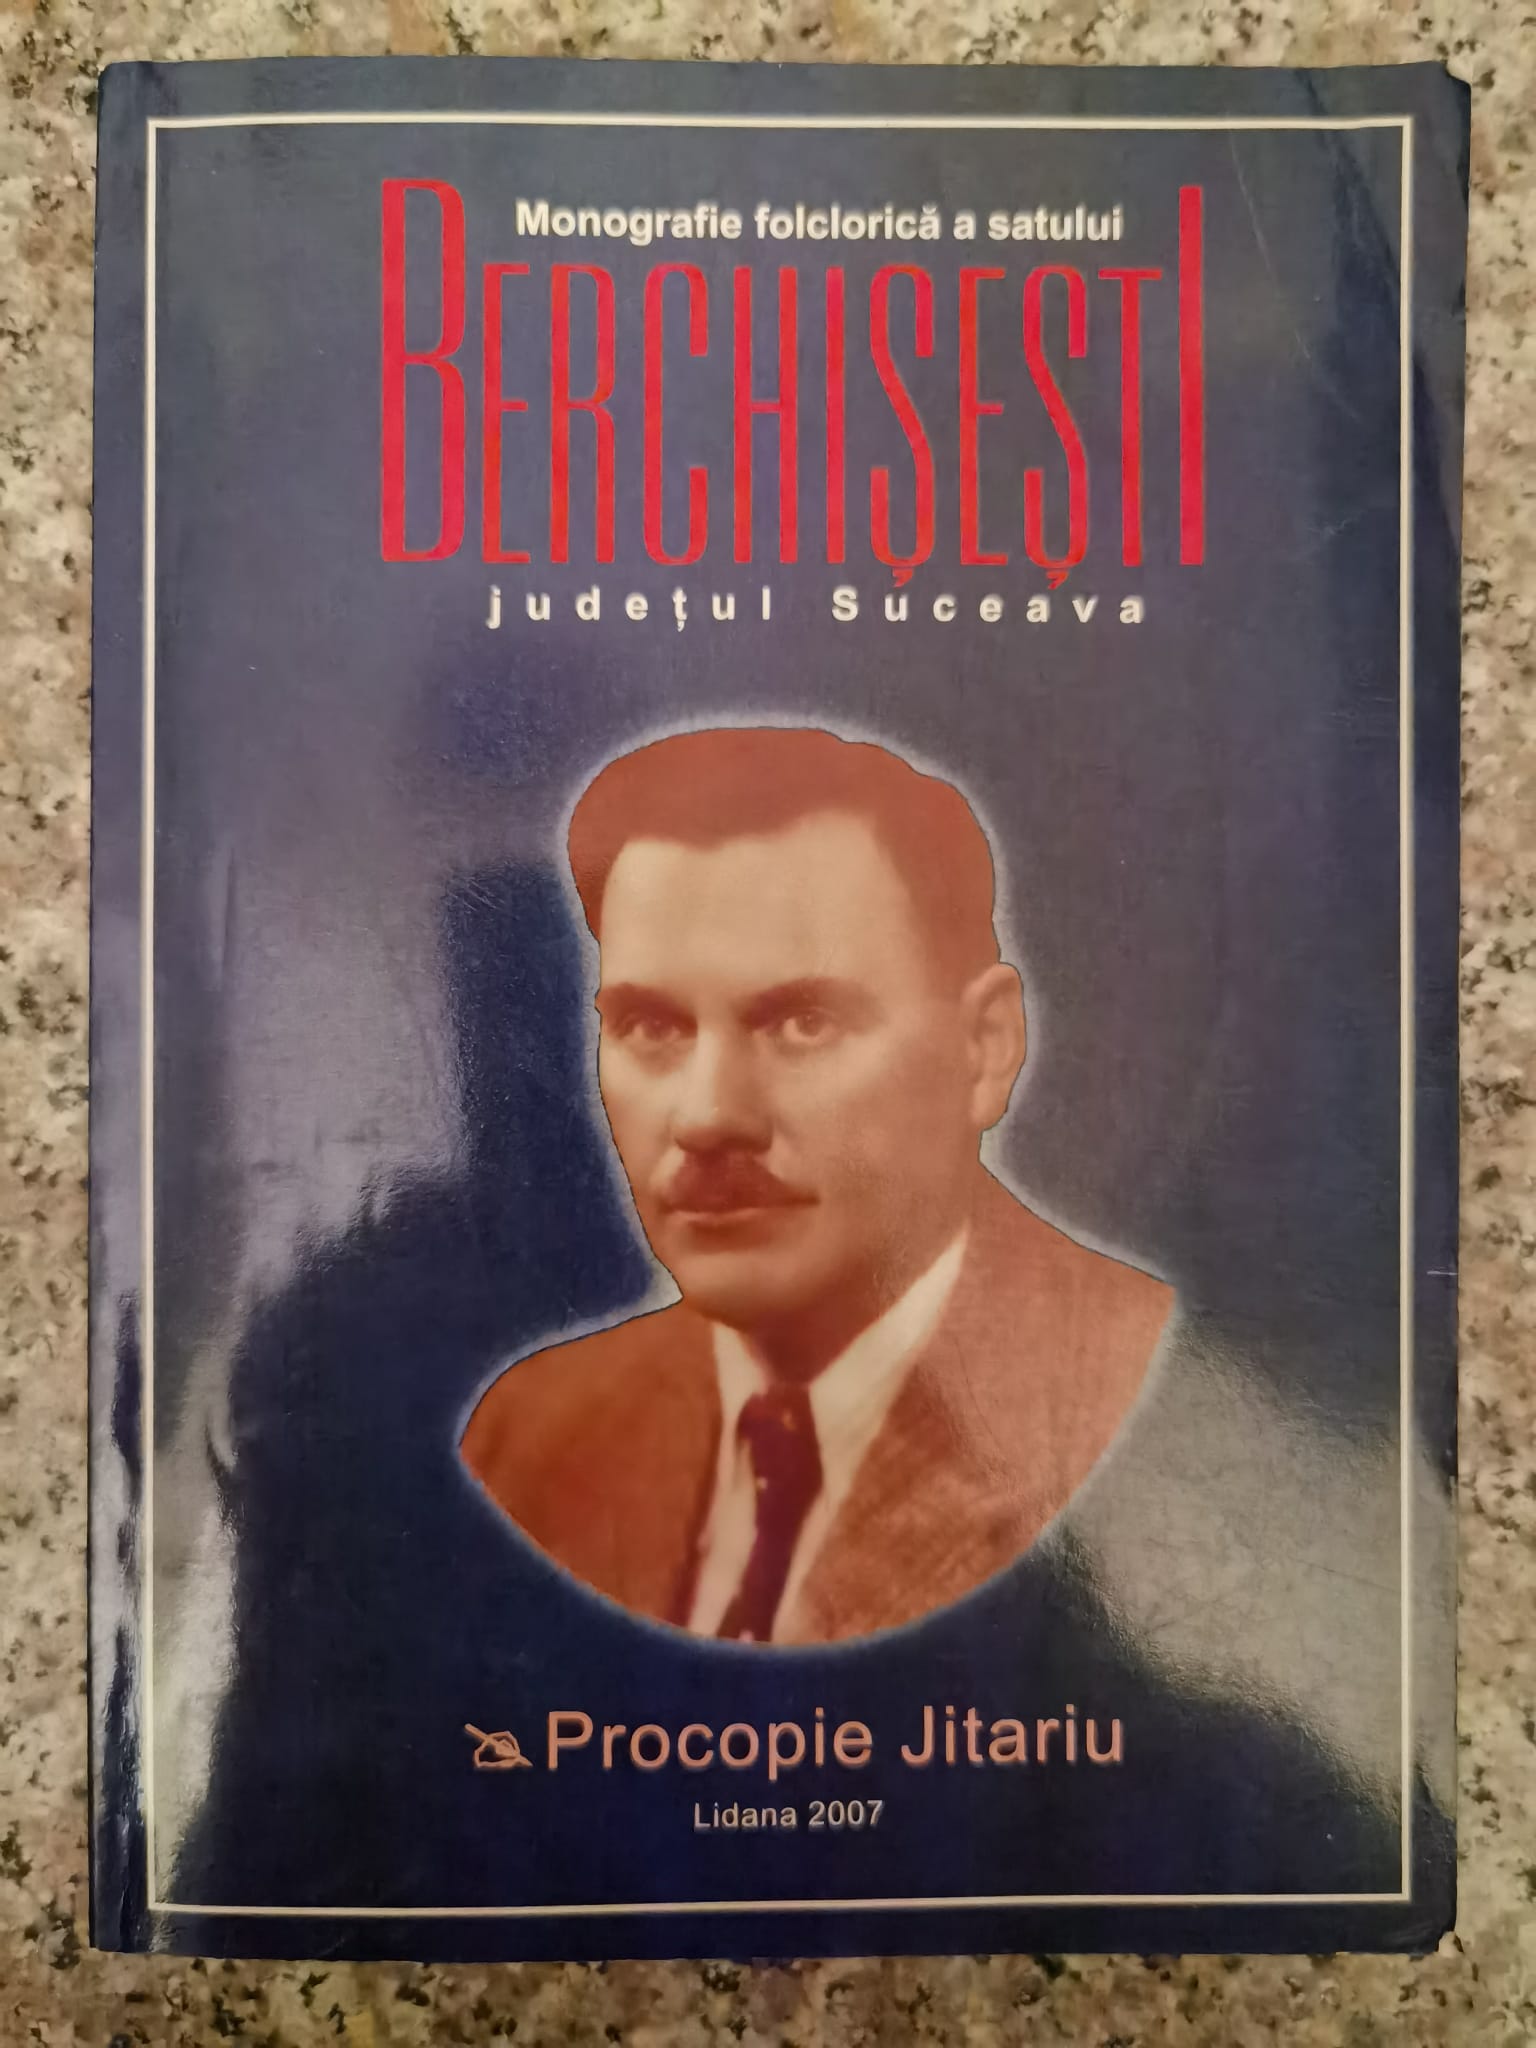 monografie folclorica a satului berchisesti, judetul suceava                                         procopie jitariu                                                                                    